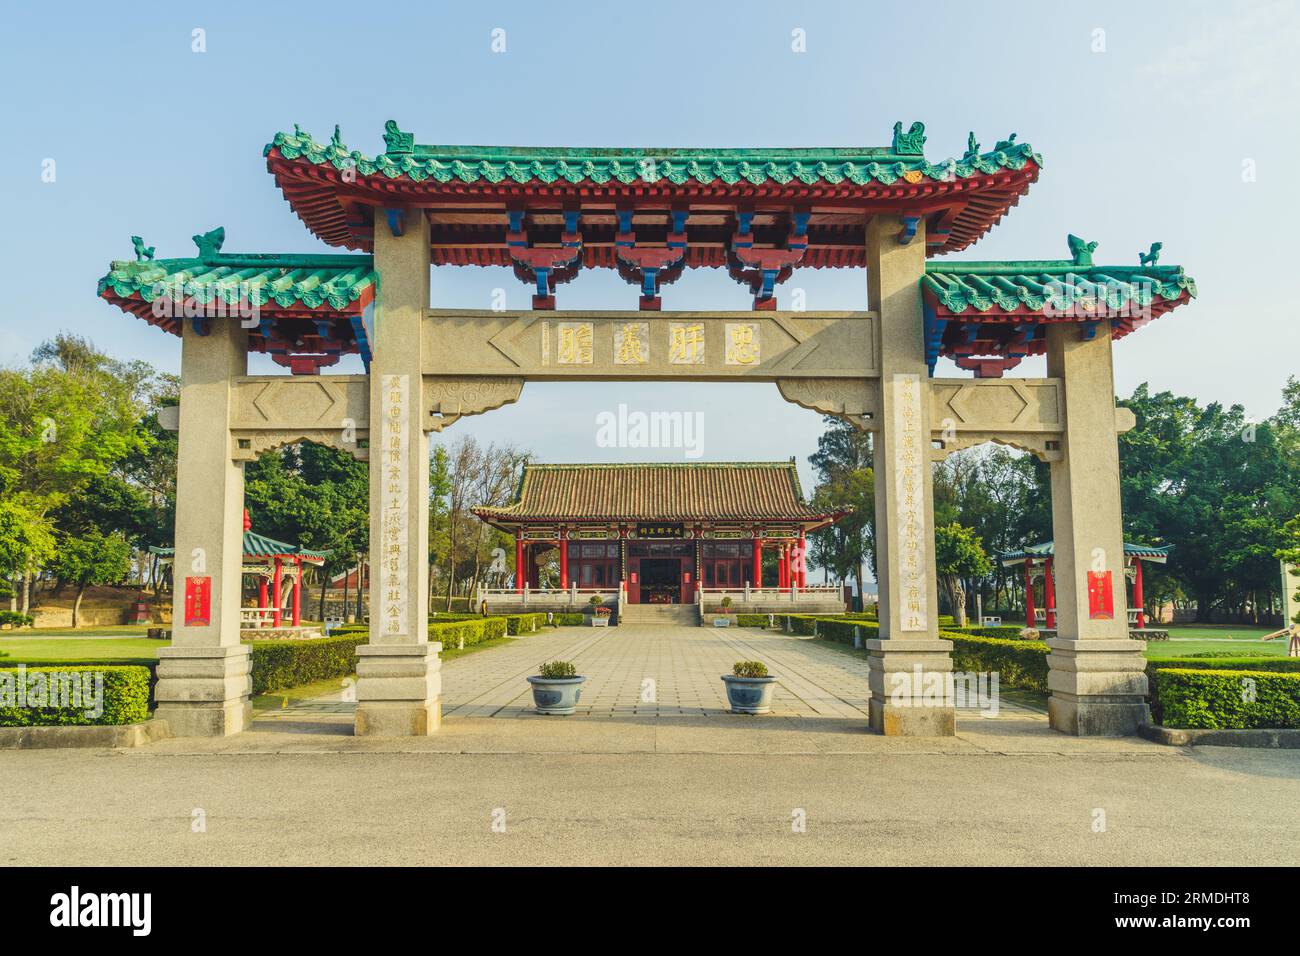 2 marzo 2019: Il Santuario Koxinga, noto anche come Tempio Yanping Junwang, situato nella contea di Kinmen, Taiwan. È costruito in memoria del lavoro e dei risultati di Foto Stock